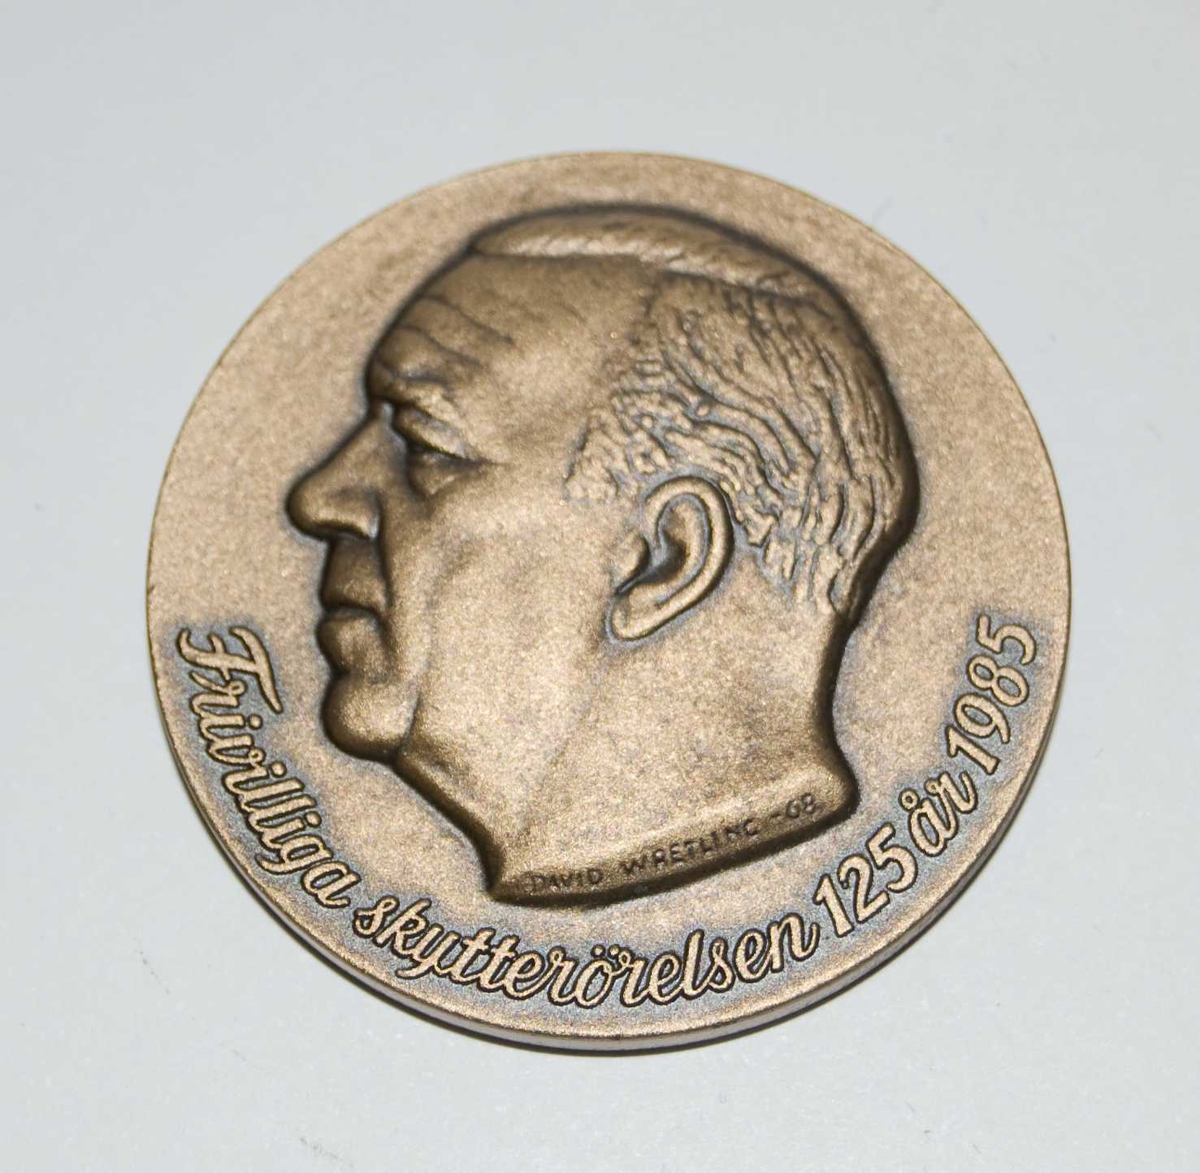 Bronsefarget medalje med motiv av et hode til en ukjent person. Hodet er i profil. Det er også motiv av det som antas å være emblemet til den Frivilliga skytterörelsen.